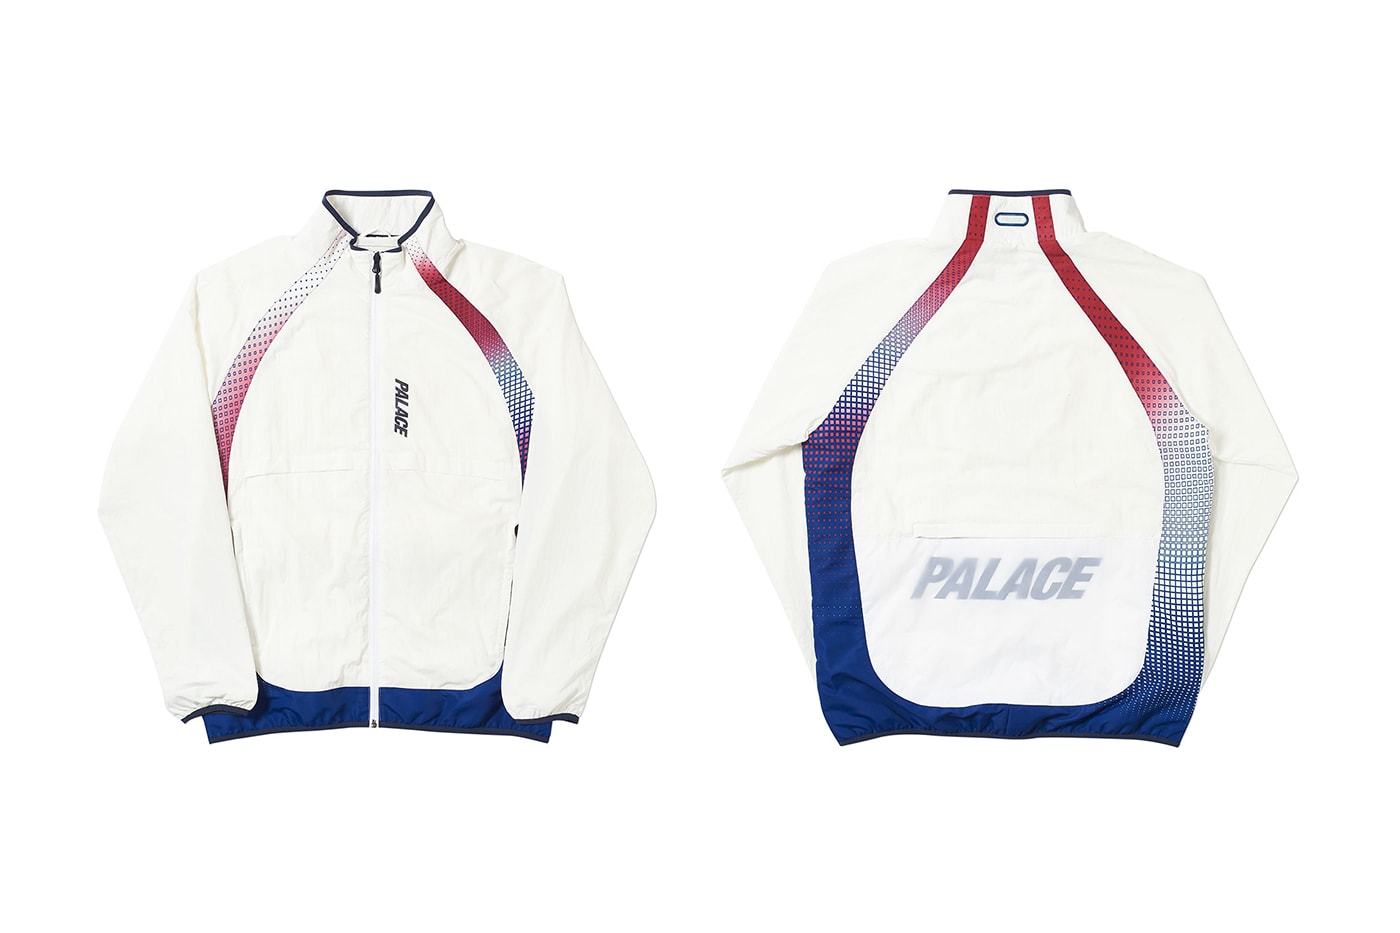 Palace 2019 夏季運動服系列一覽